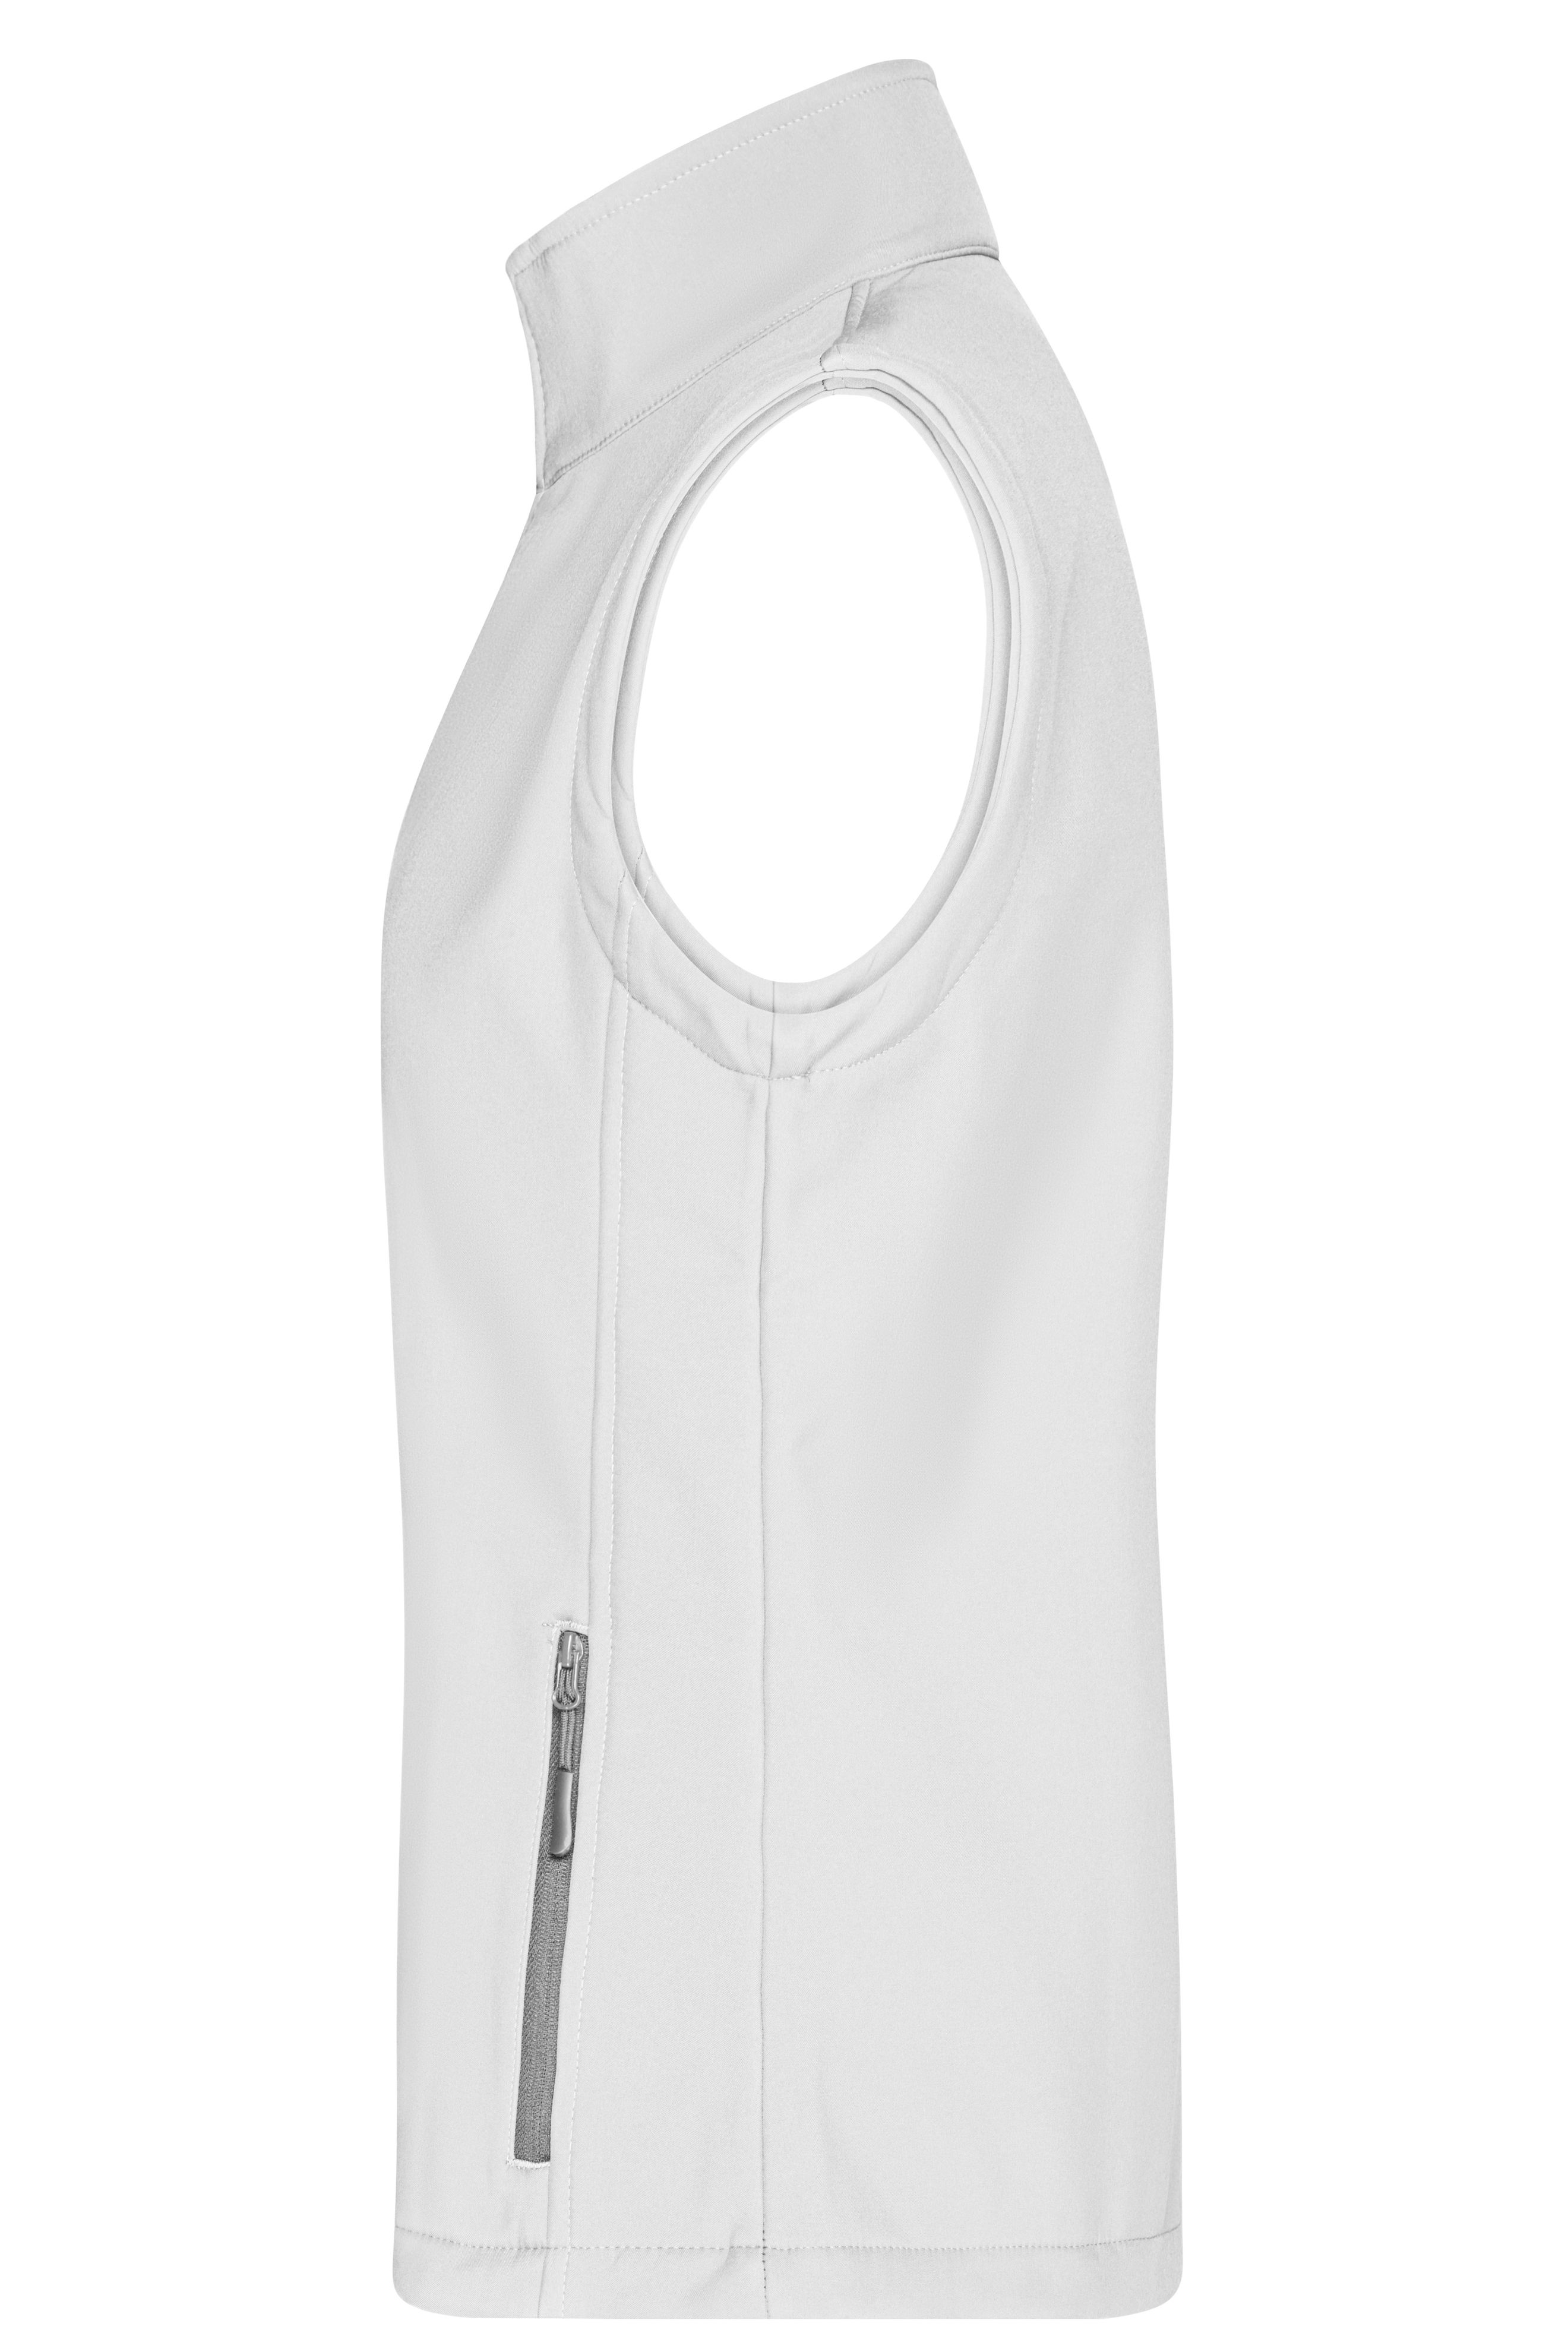 Ladies' Promo Softshell Vest JN1127 Softshellweste für Promotion und Freizeit